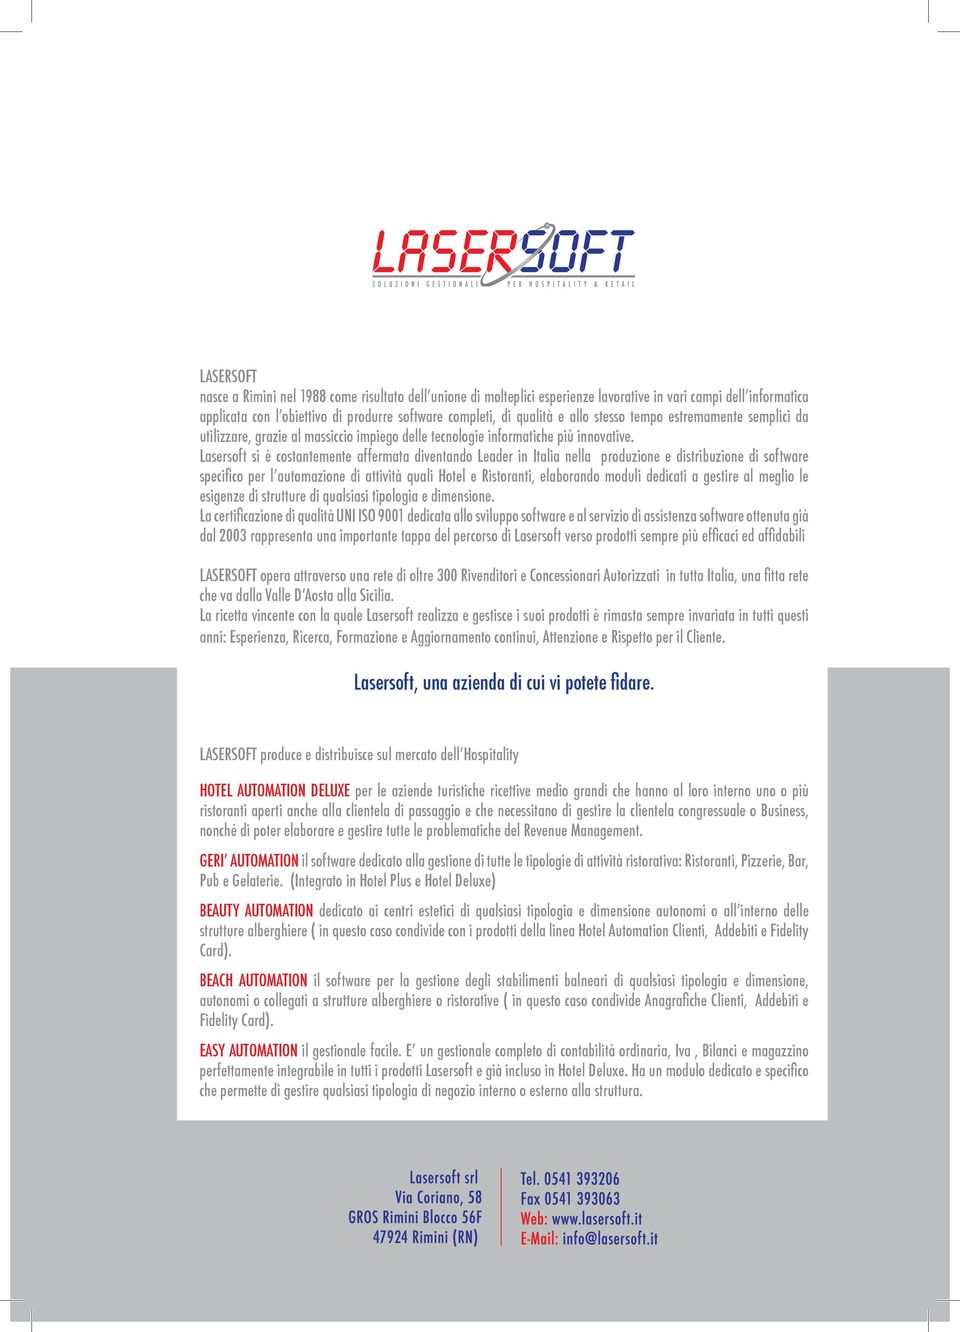 Lasersoft si è costantemente affermata diventando Leader in Italia nella produzione e distribuzione di software specifico per l automazione di attività quali Hotel e Ristoranti, elaborando moduli